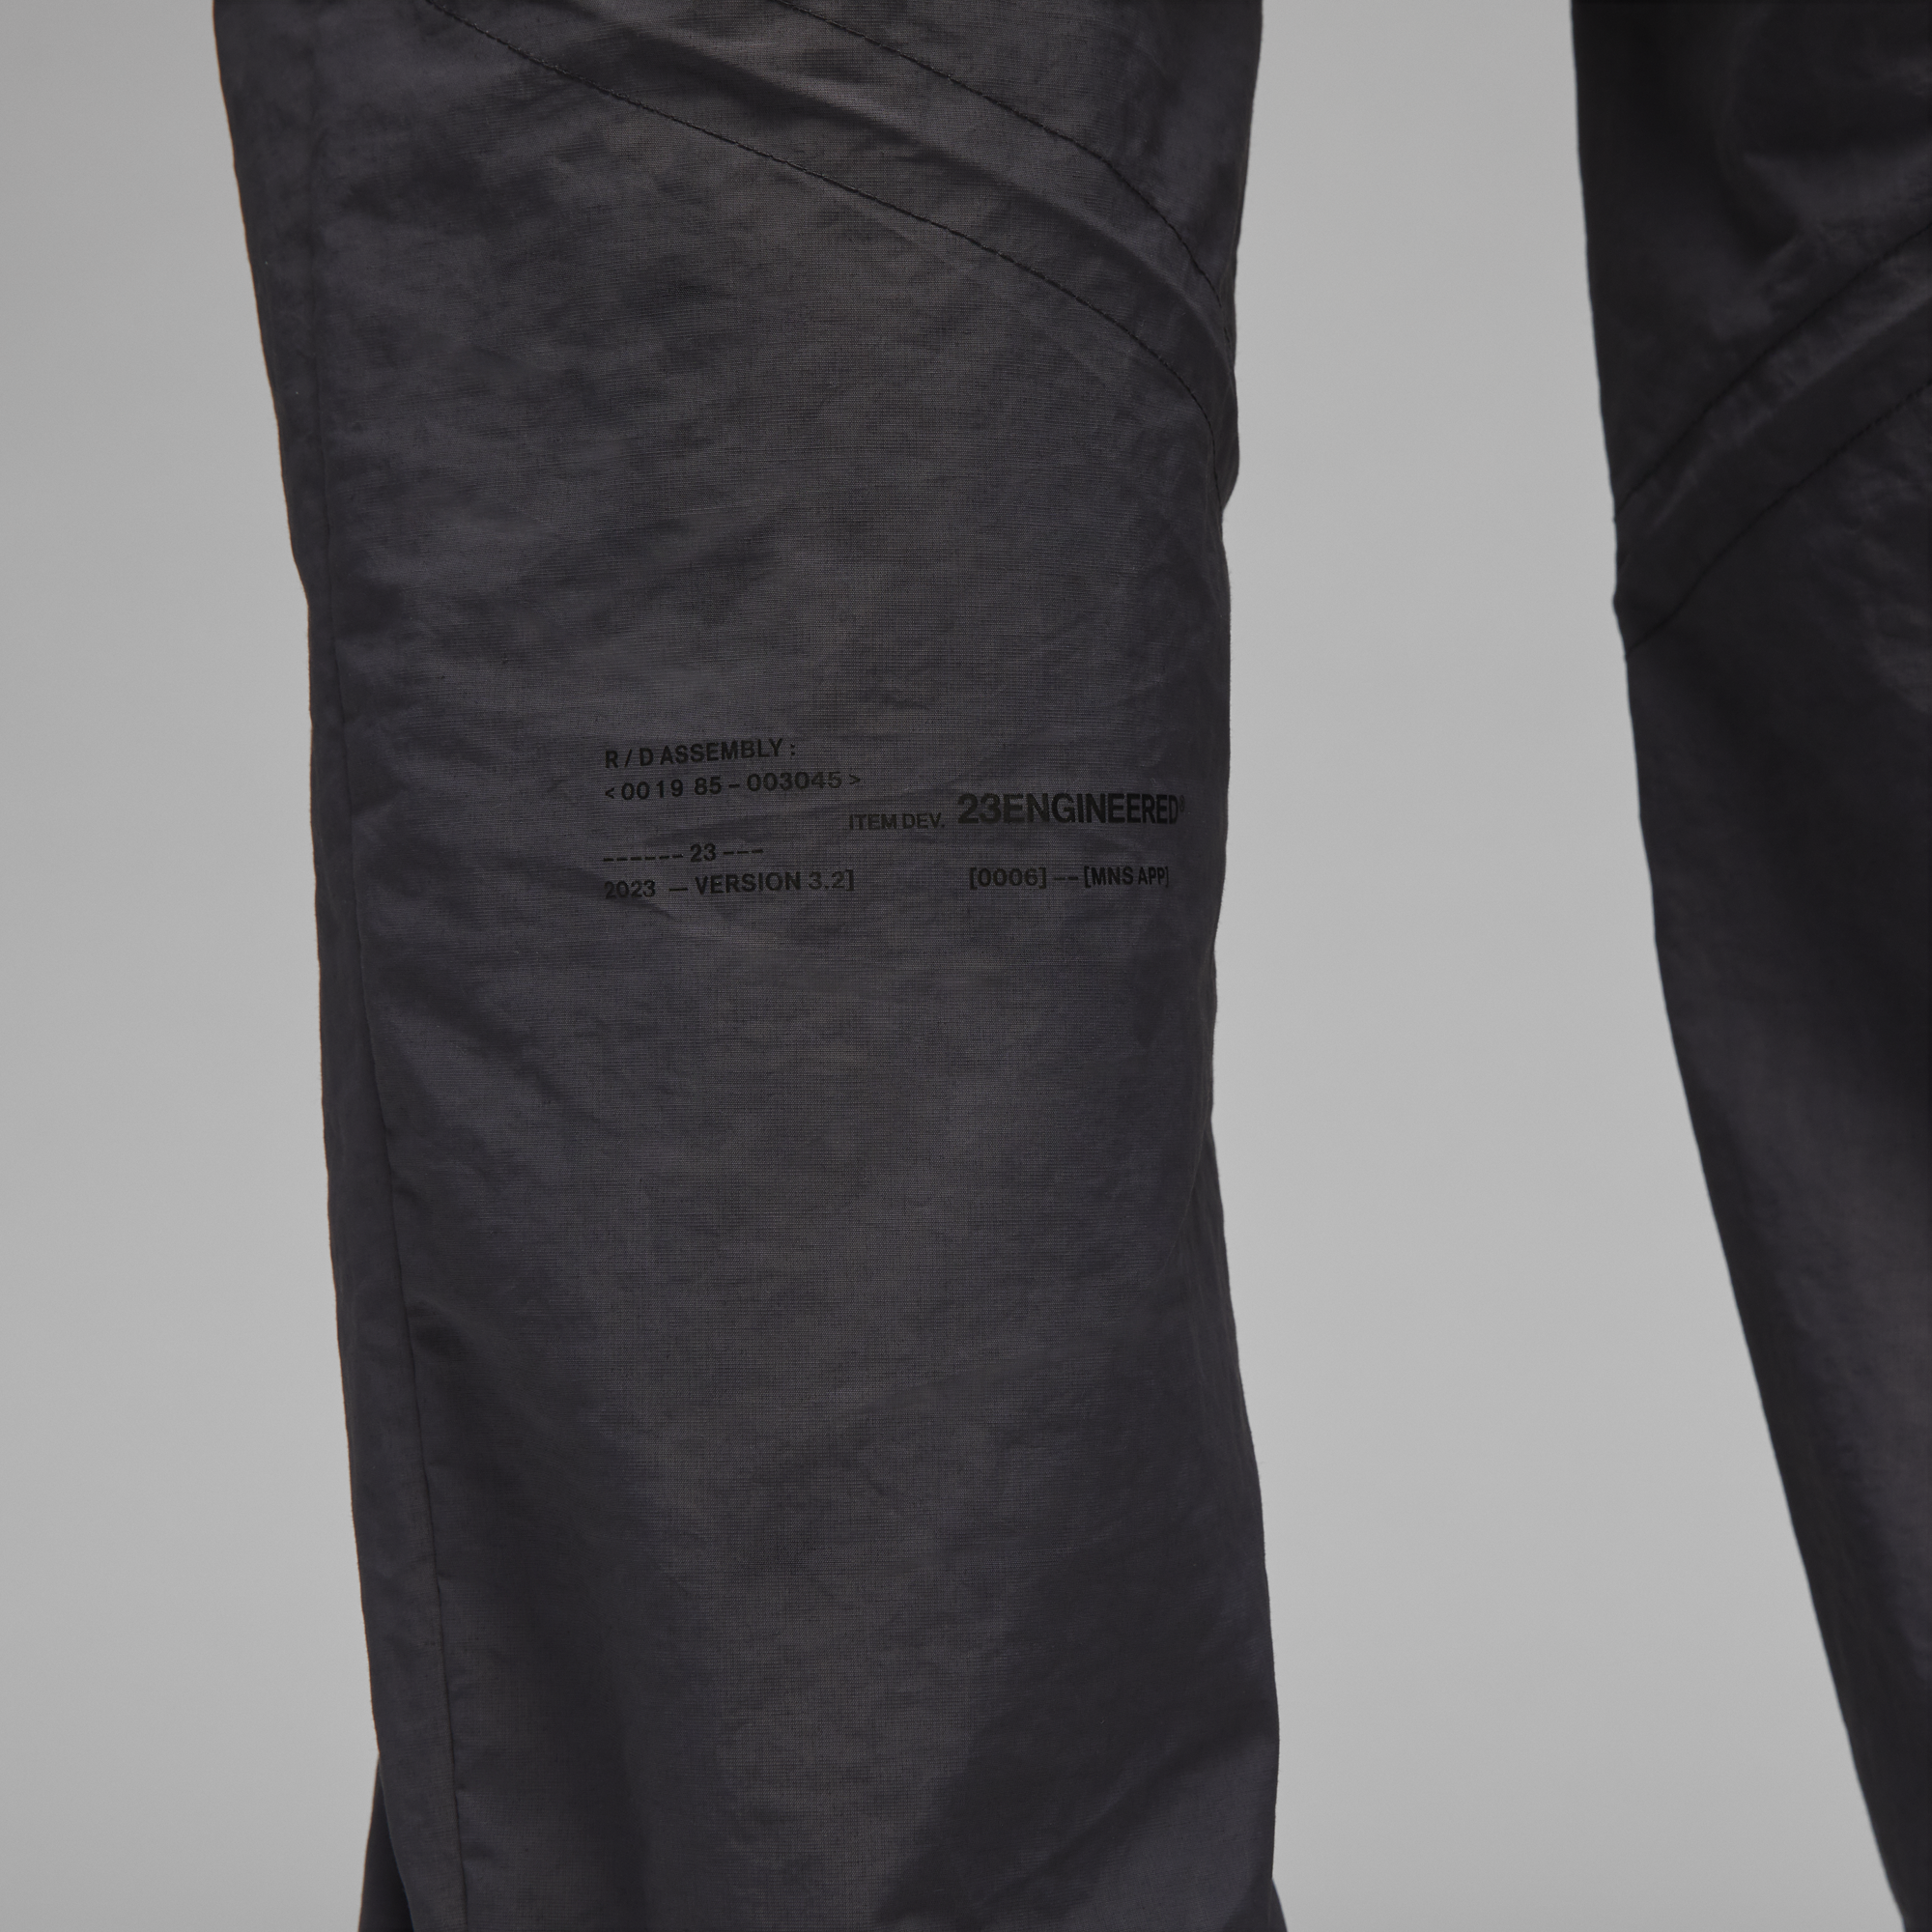 Jordan 23 Engineered Pants 'Dark Shadow'